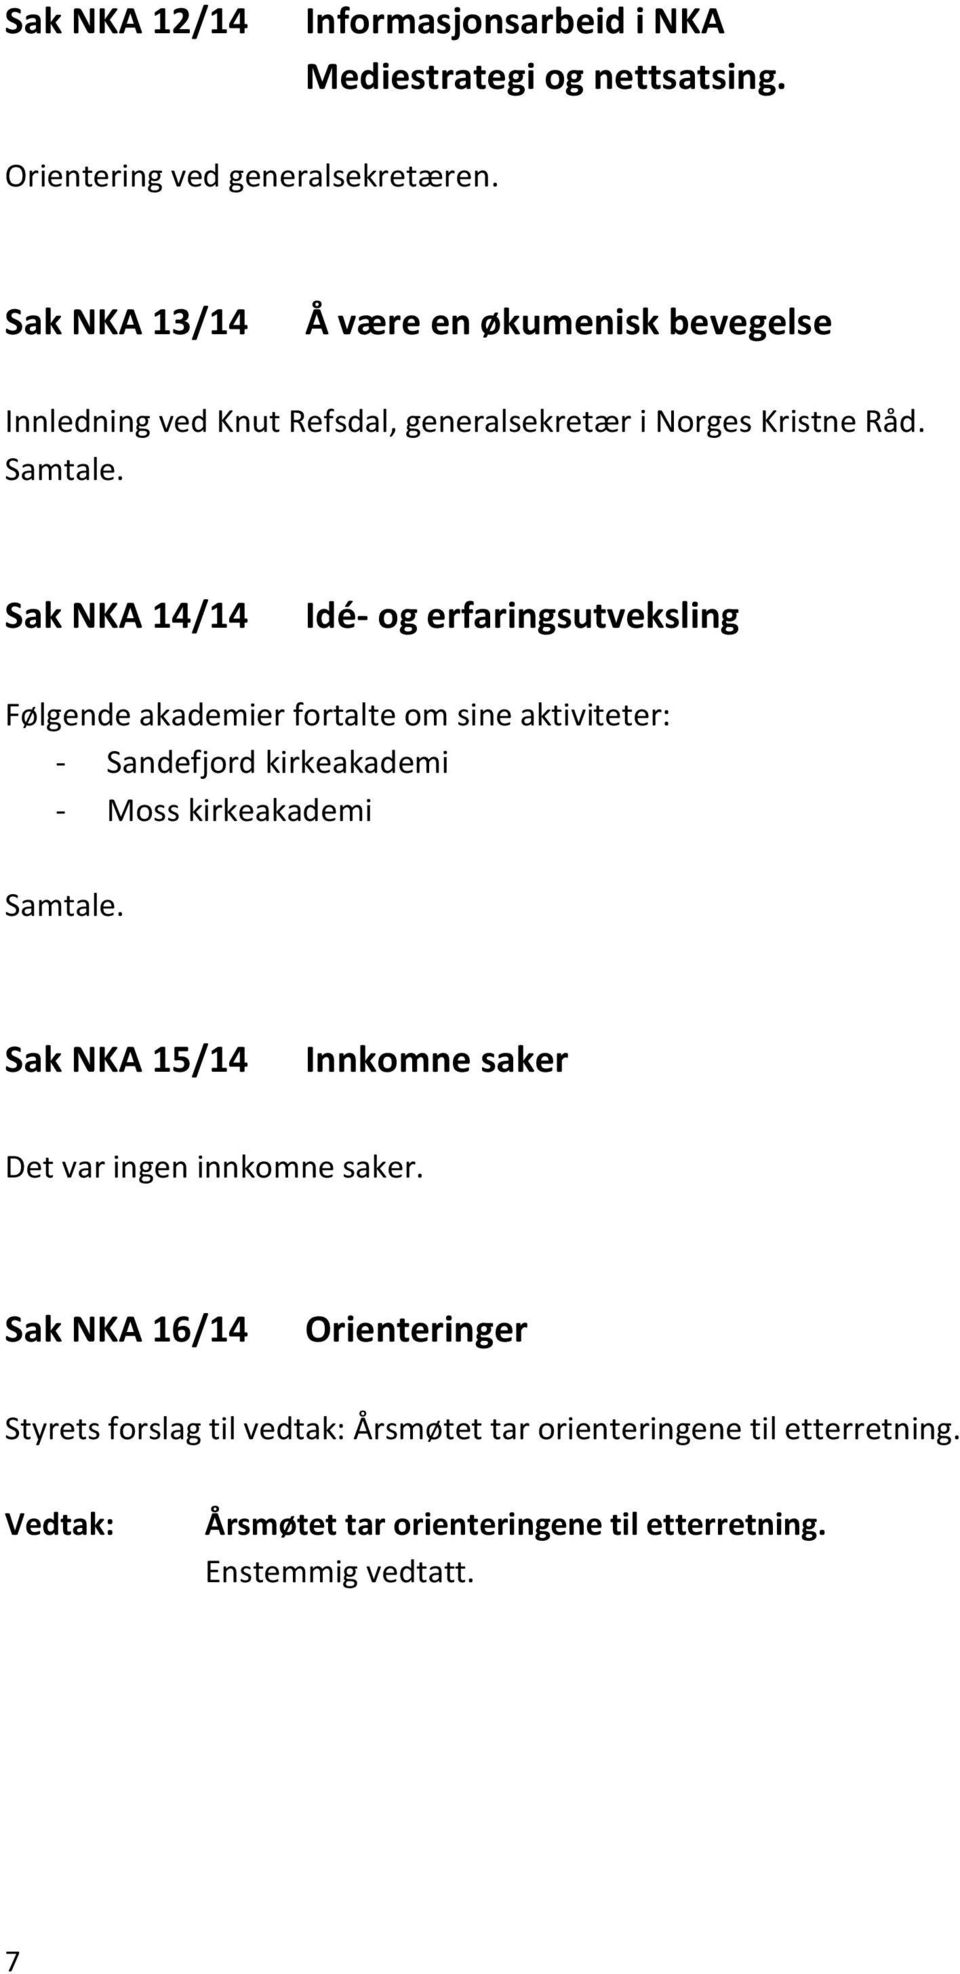 Sak NKA 14/14 Idé- og erfaringsutveksling Følgende akademier fortalte om sine aktiviteter: - Sandefjord kirkeakademi - Moss kirkeakademi Samtale.